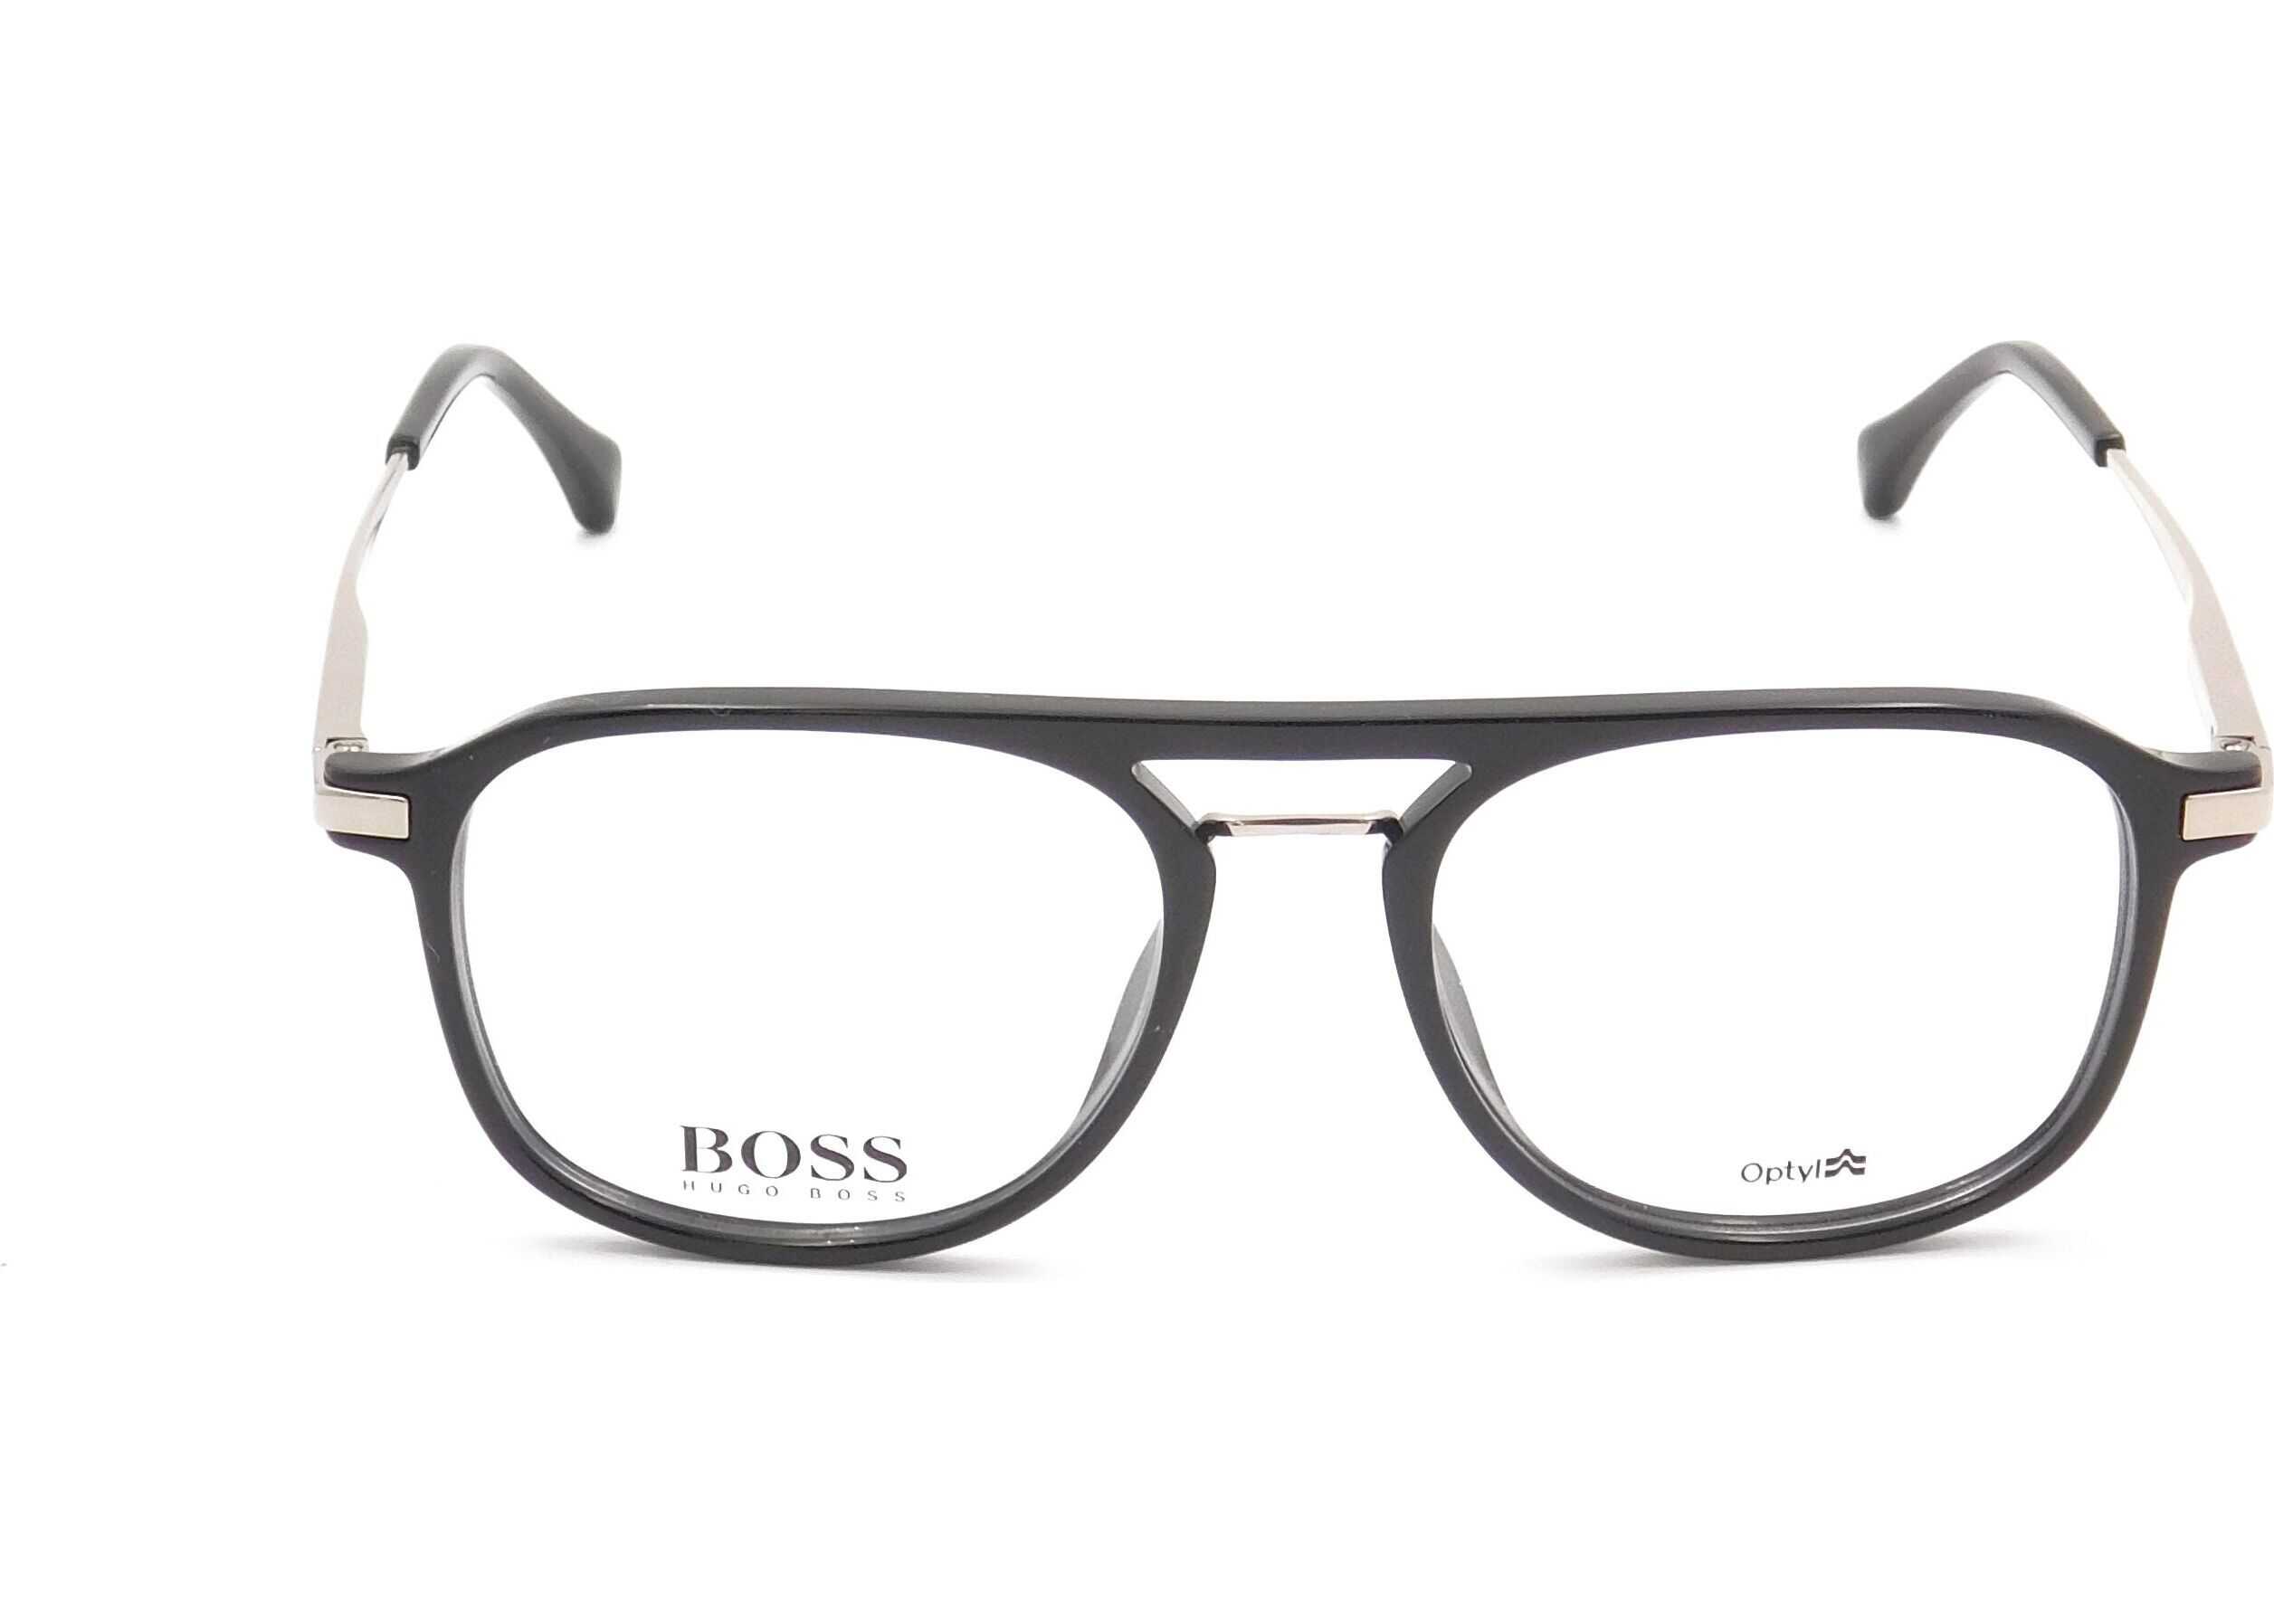 BOSS Hugo Boss Acetate Glasses* BLACK